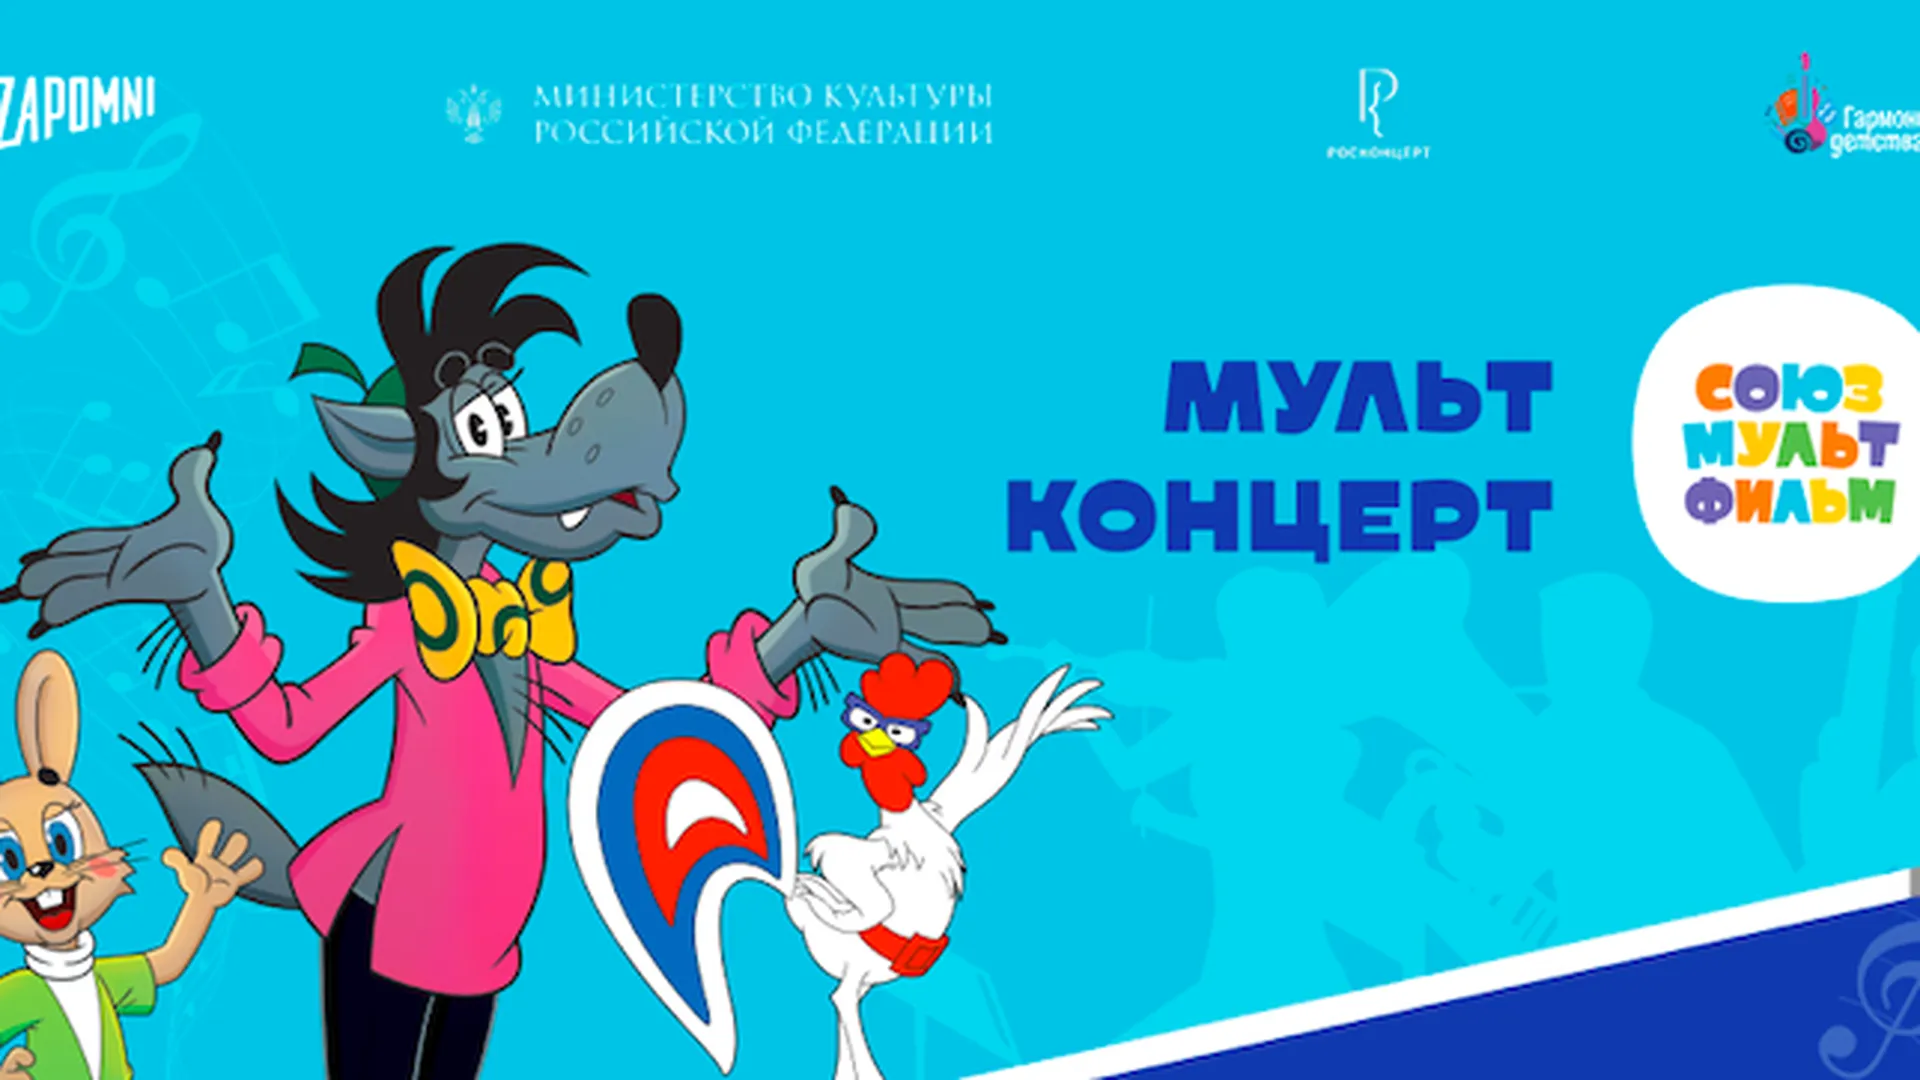 Третий благотворительный фестиваль мультконцертов пройдет в Красногорске 25 ноября